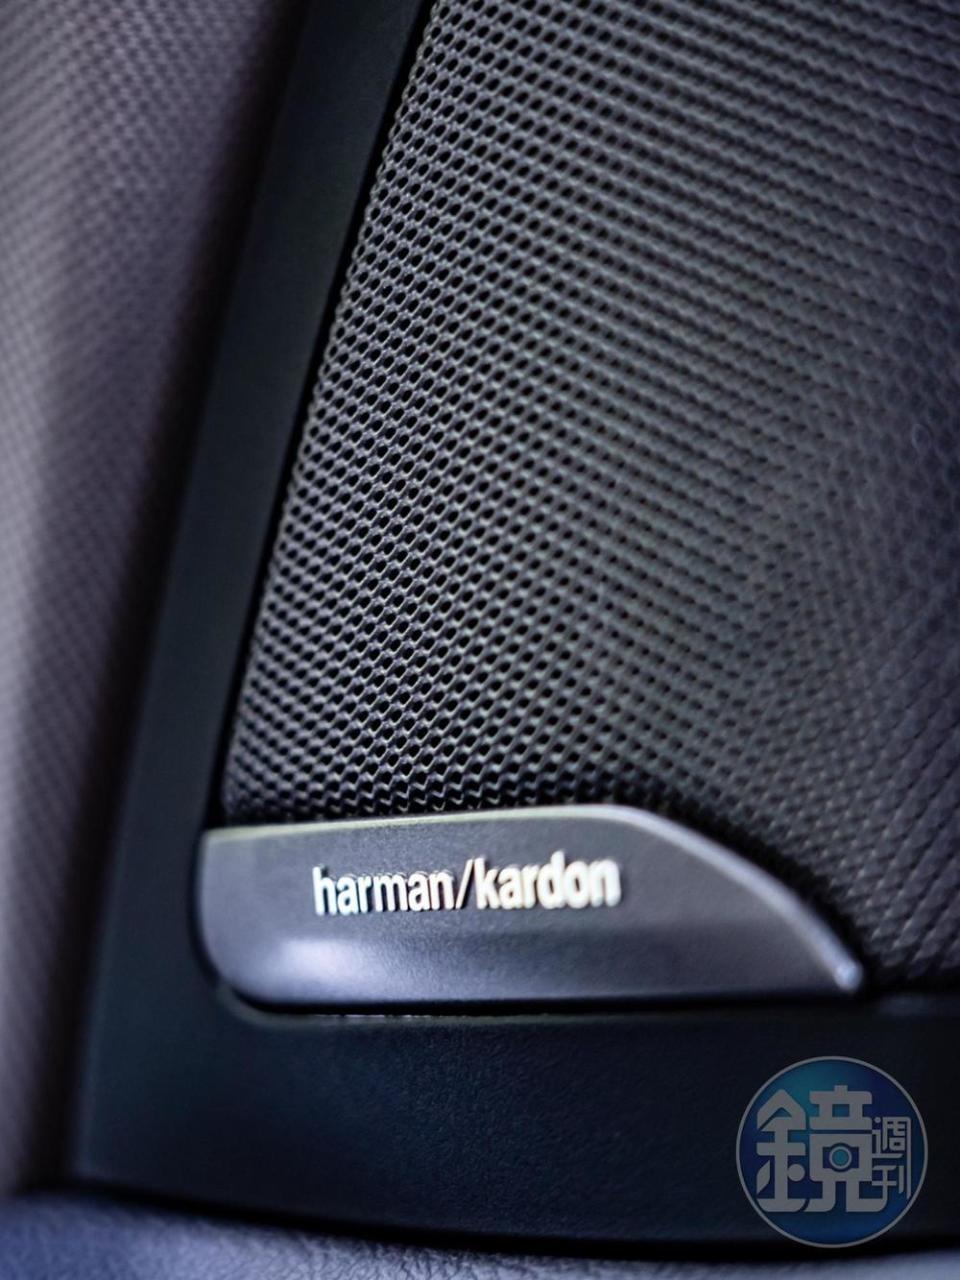 16支揚聲器組成的頂級harmon/kardon高傳真音響系統。